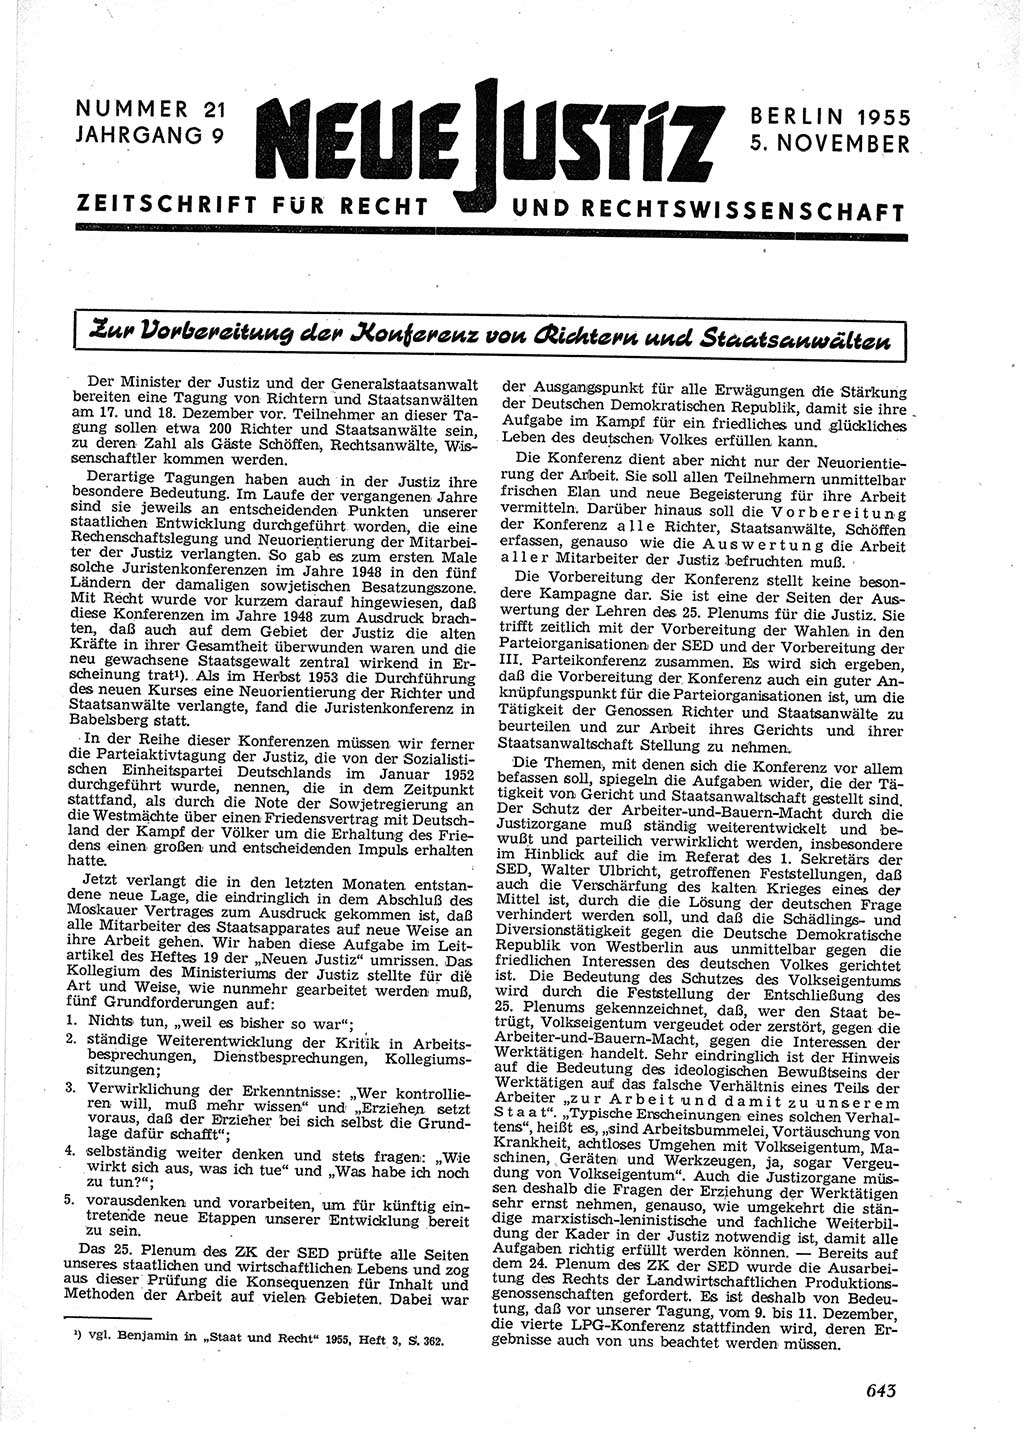 Neue Justiz (NJ), Zeitschrift für Recht und Rechtswissenschaft [Deutsche Demokratische Republik (DDR)], 9. Jahrgang 1955, Seite 643 (NJ DDR 1955, S. 643)